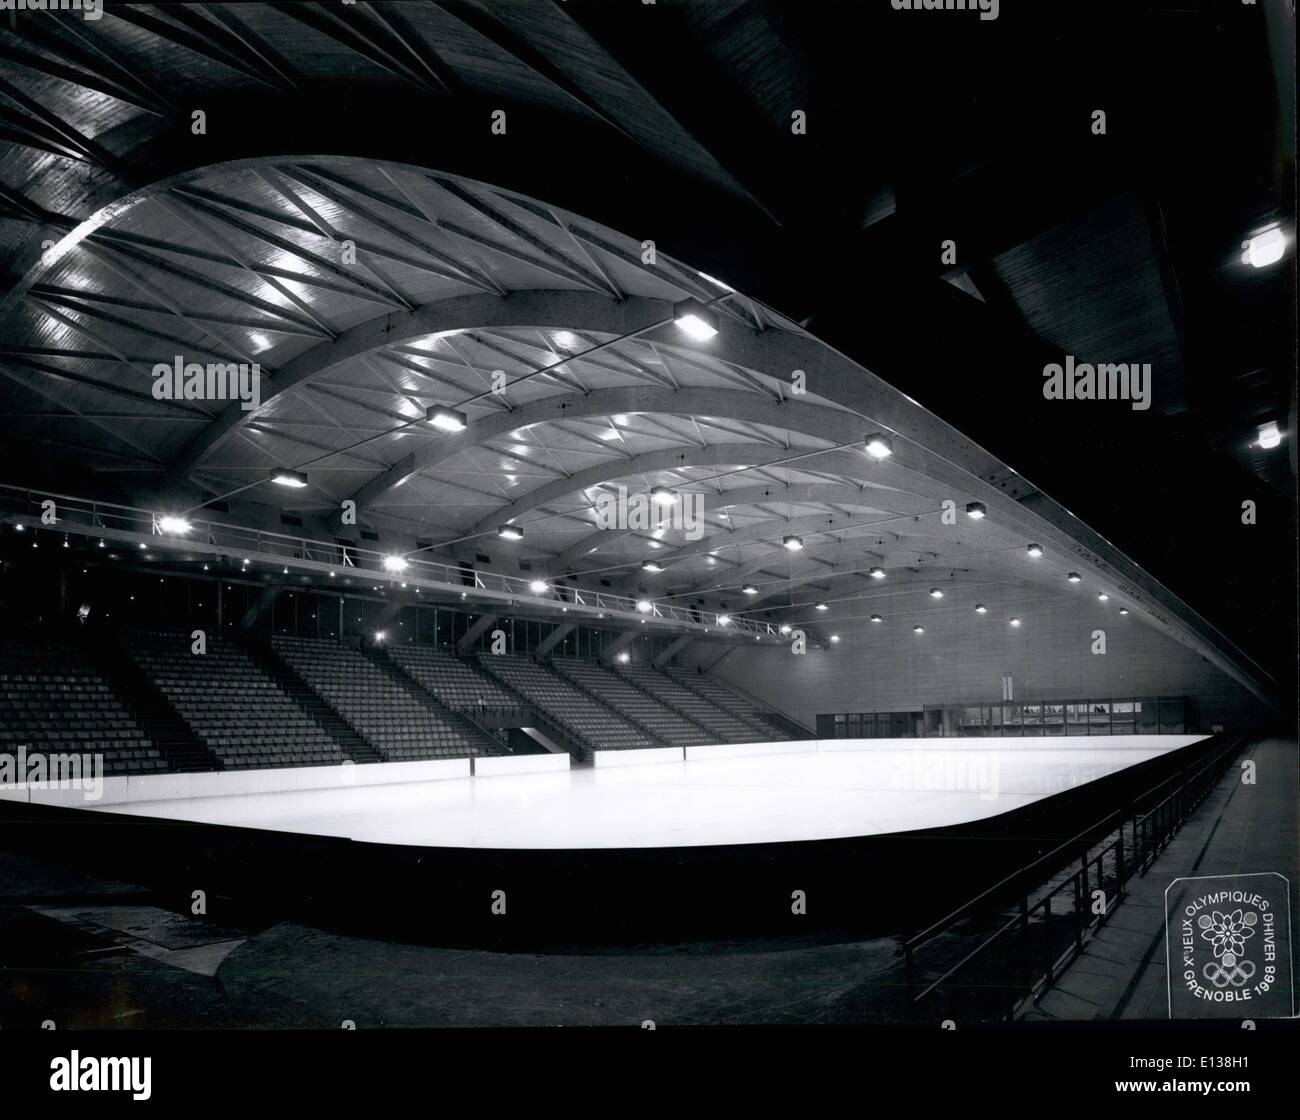 29 février 2012 - Stade de glace Ã¢â€" Grenoble France 1968 Jeux Olympiques Banque D'Images